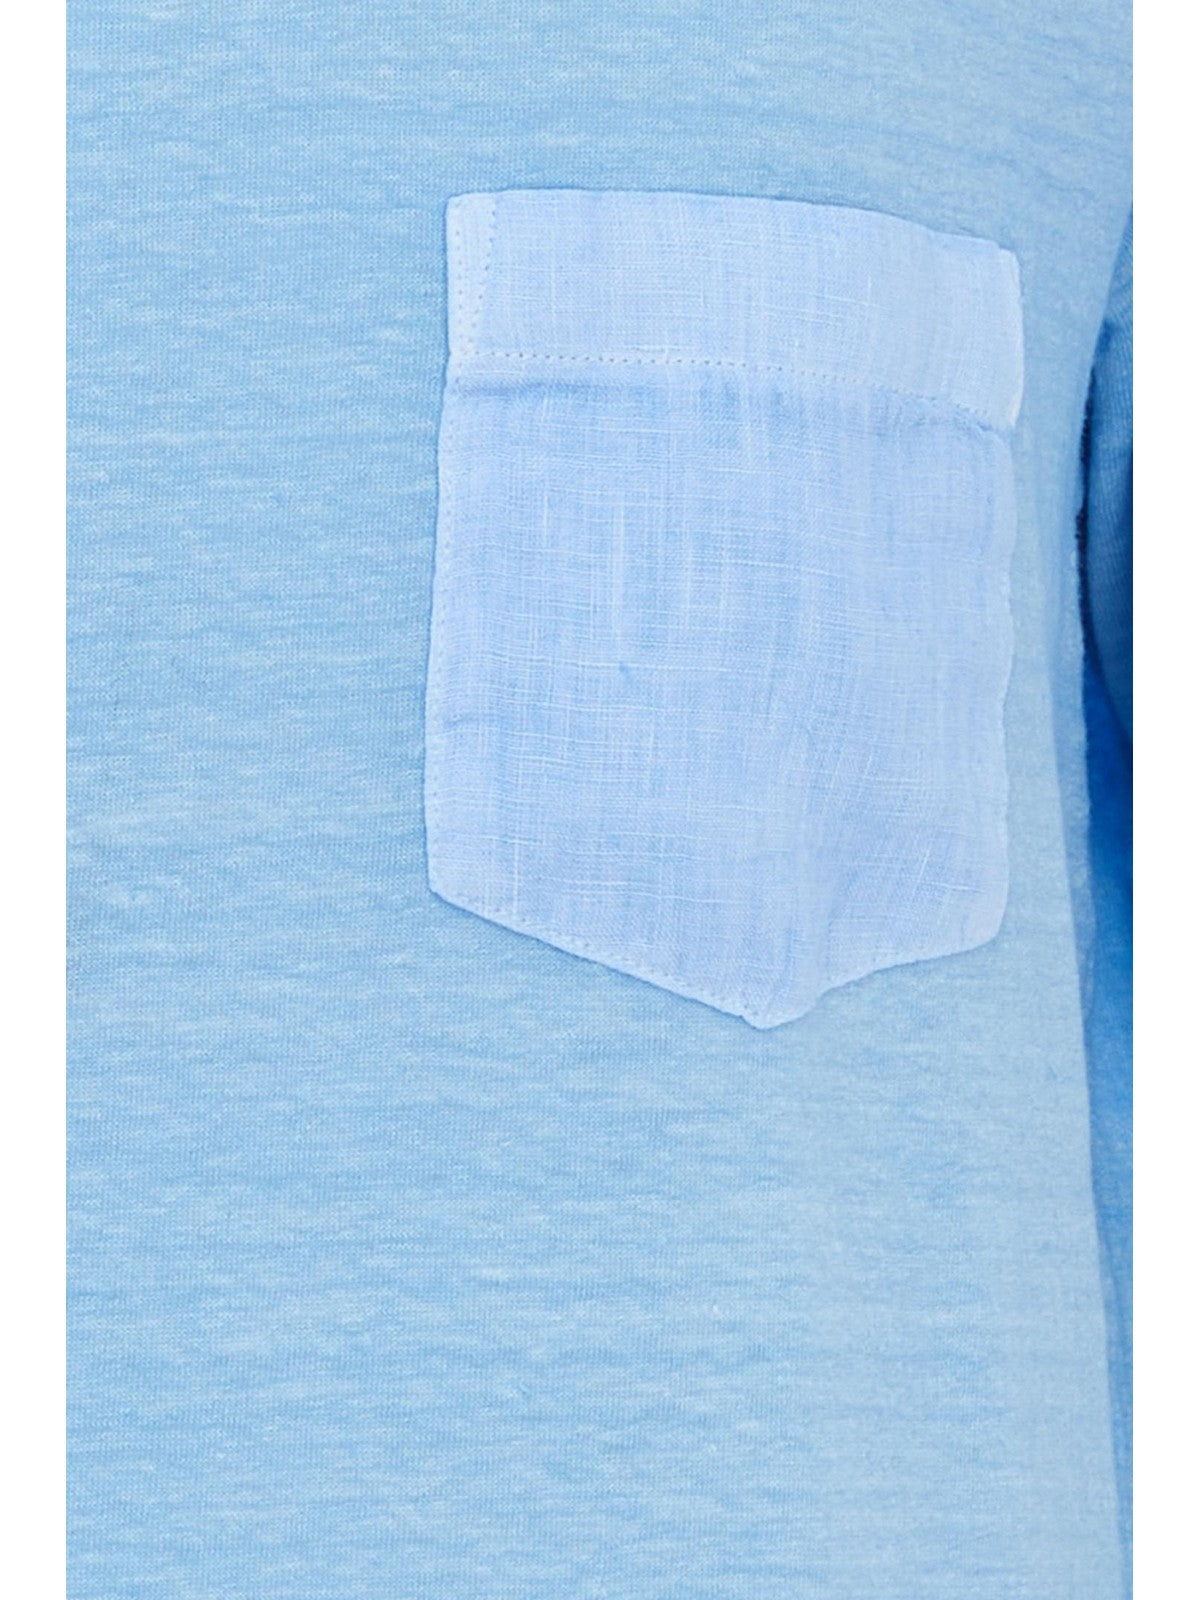 GRAN SASSO T-Shirt e Polo Uomo  60141/78616 570 Blu